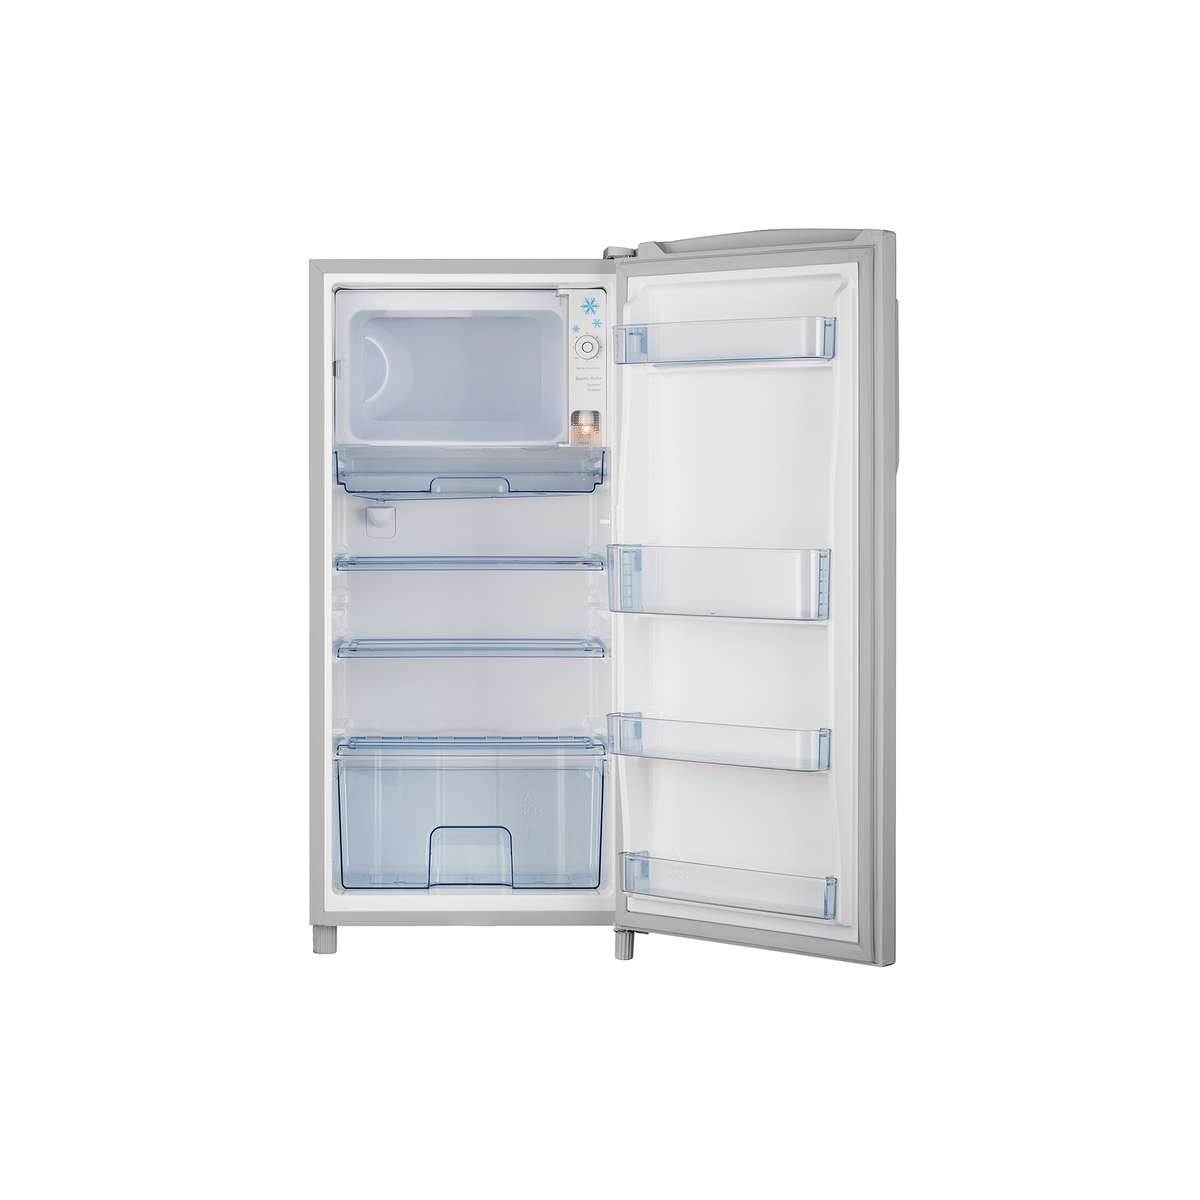 Hisence Single Door Refrigerator RR195DAGS 195Ltr